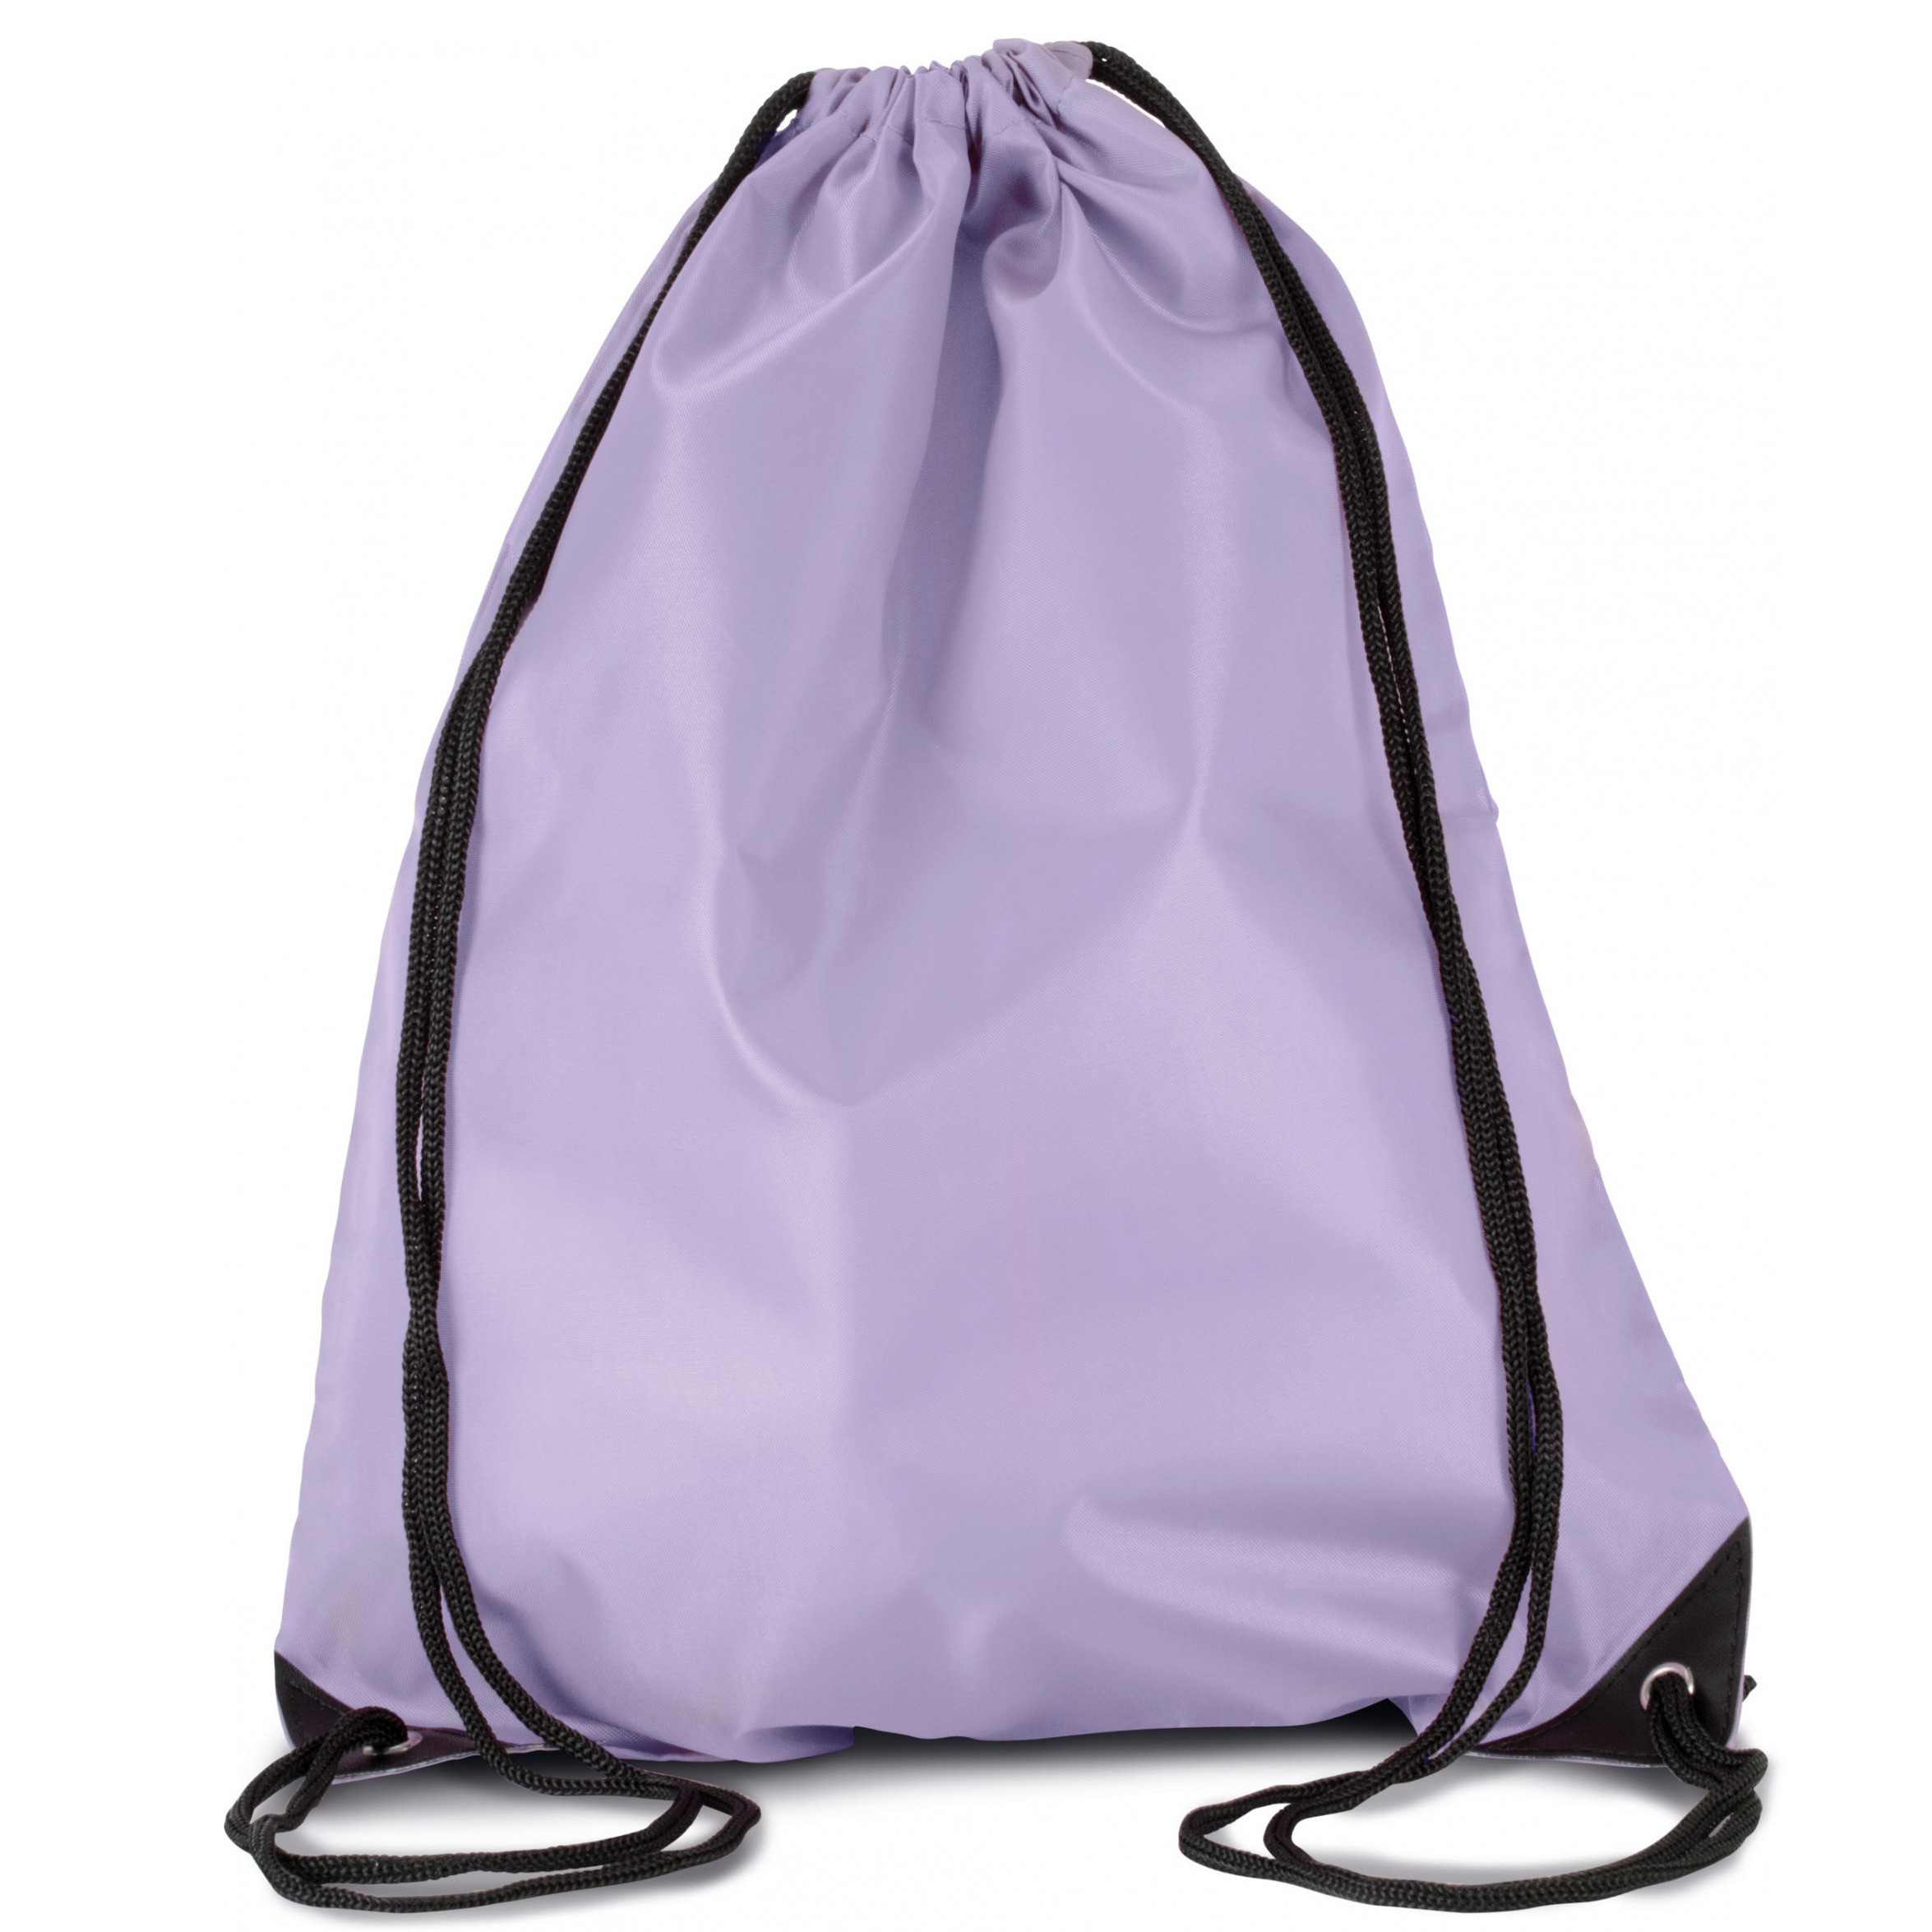 Sport gymtas-draagtas lila paars met rijgkoord 34 x 44 cm van polyester